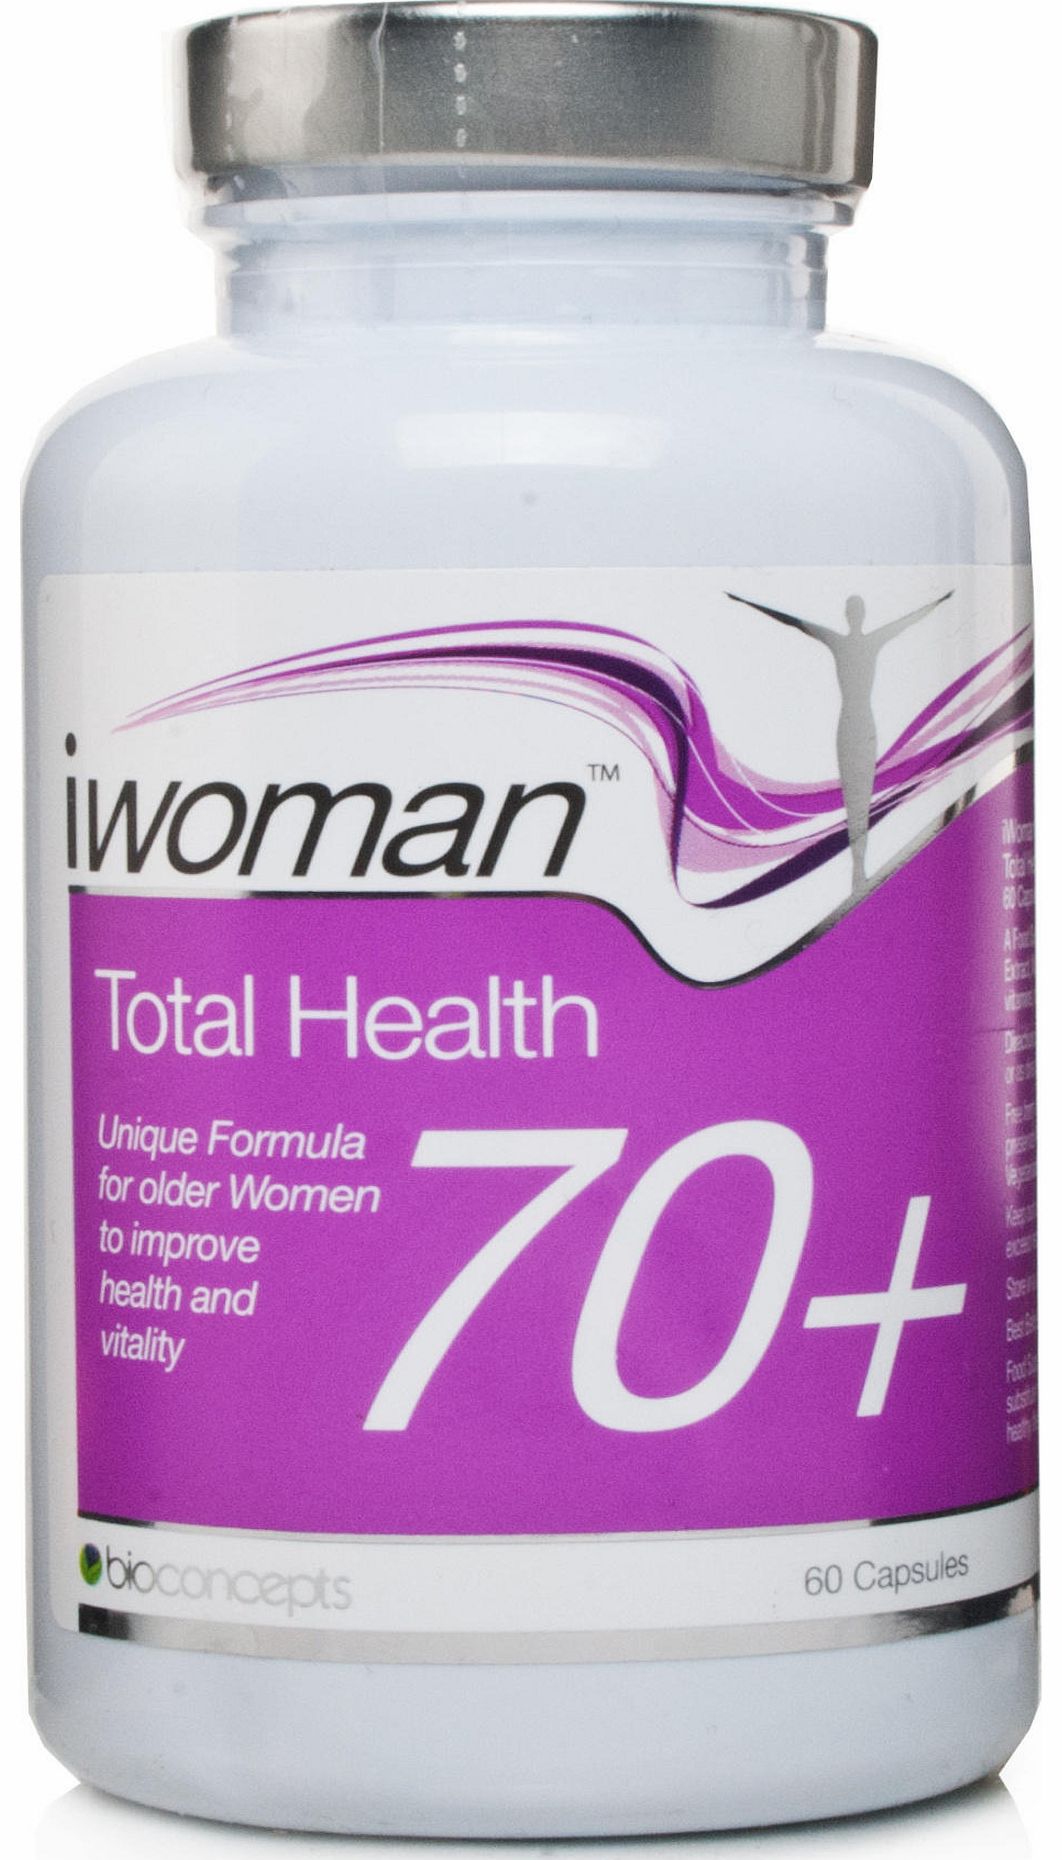 Bioconcepts iwoman Total Health 70 